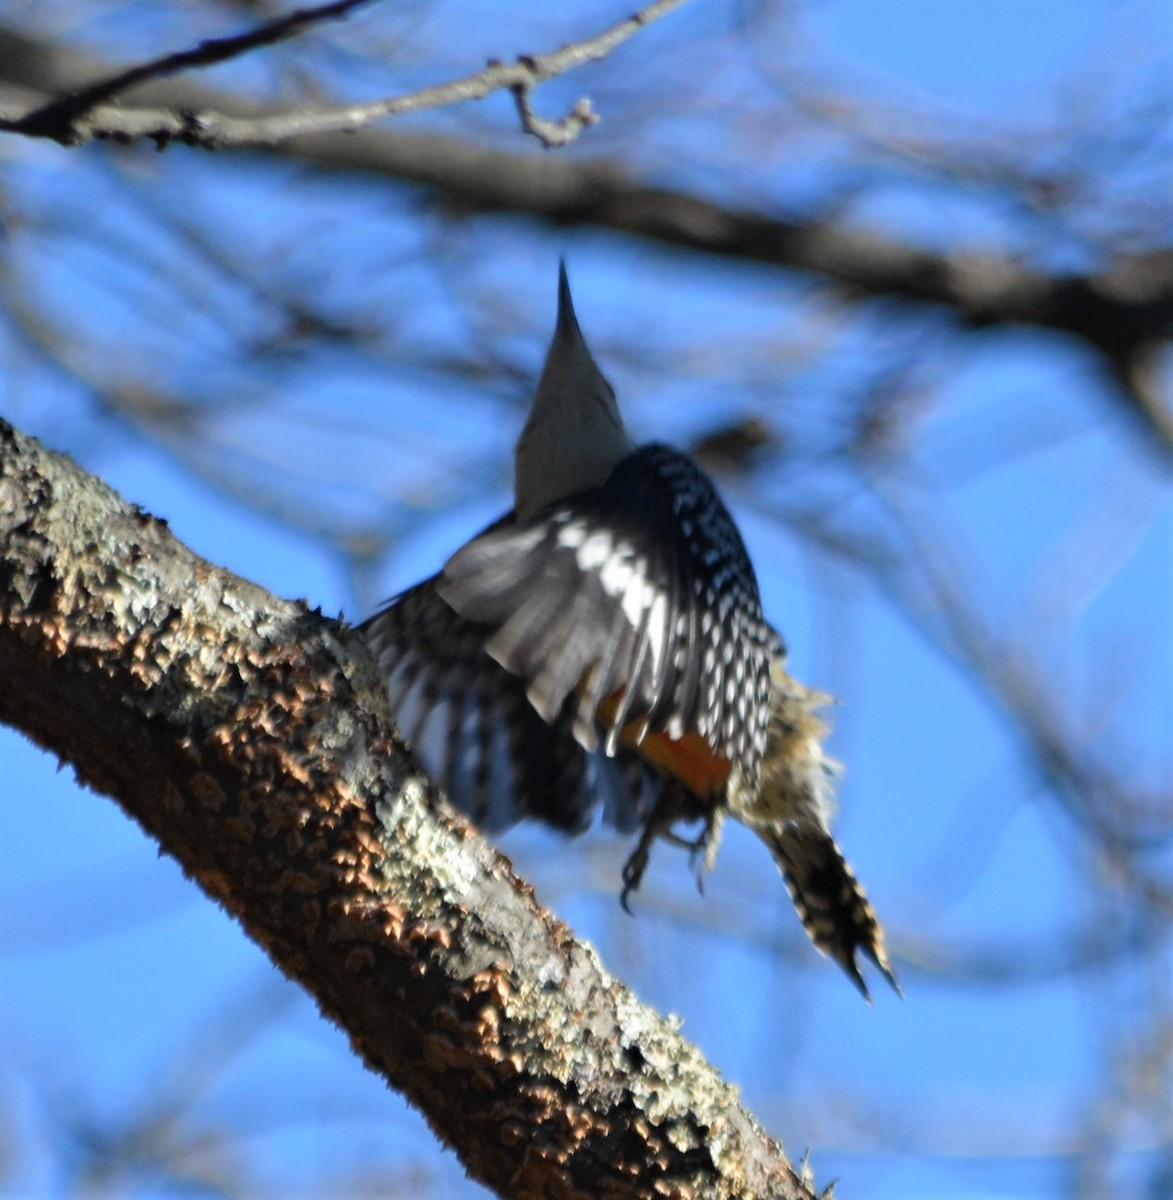 Red-bellied Woodpecker - Micky Komara